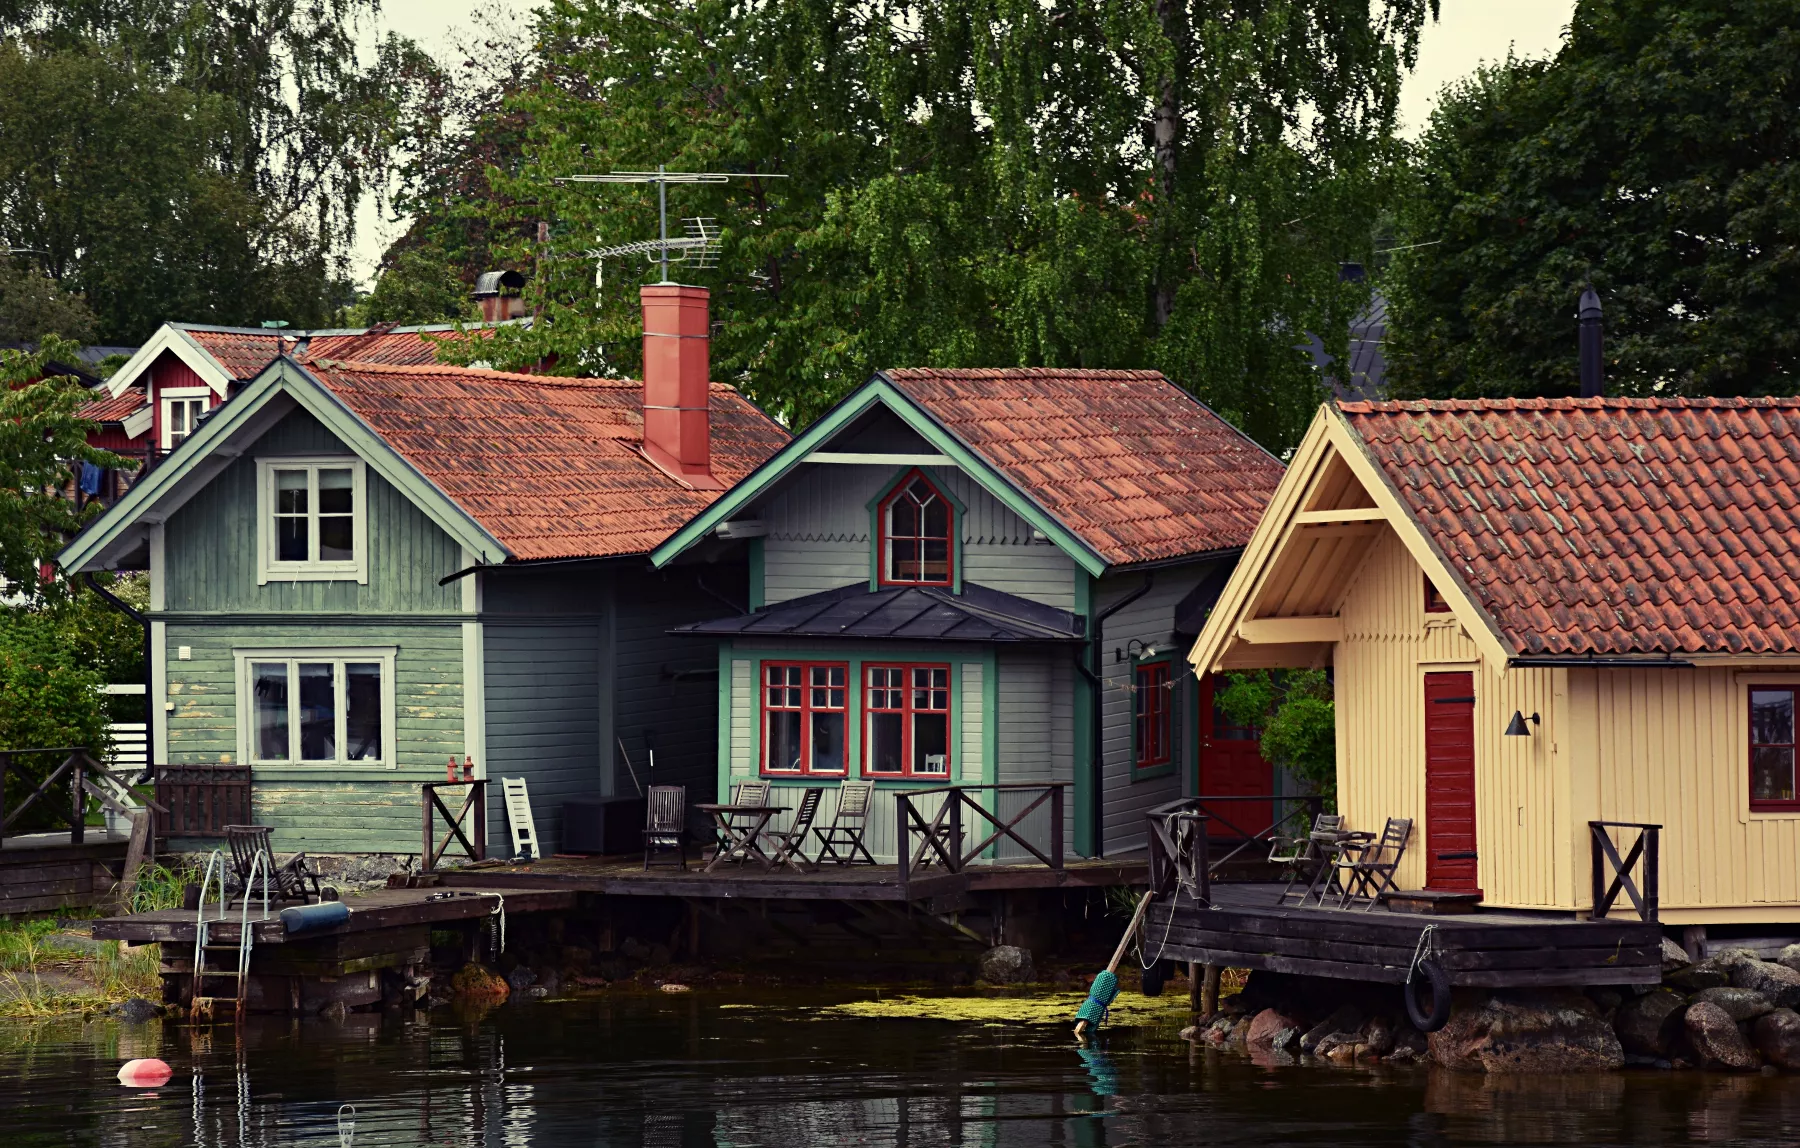 Direkt am Wasser stehen 3 Holzhütten im typisch schwedischem Stil und unterschiedlichen Farben.